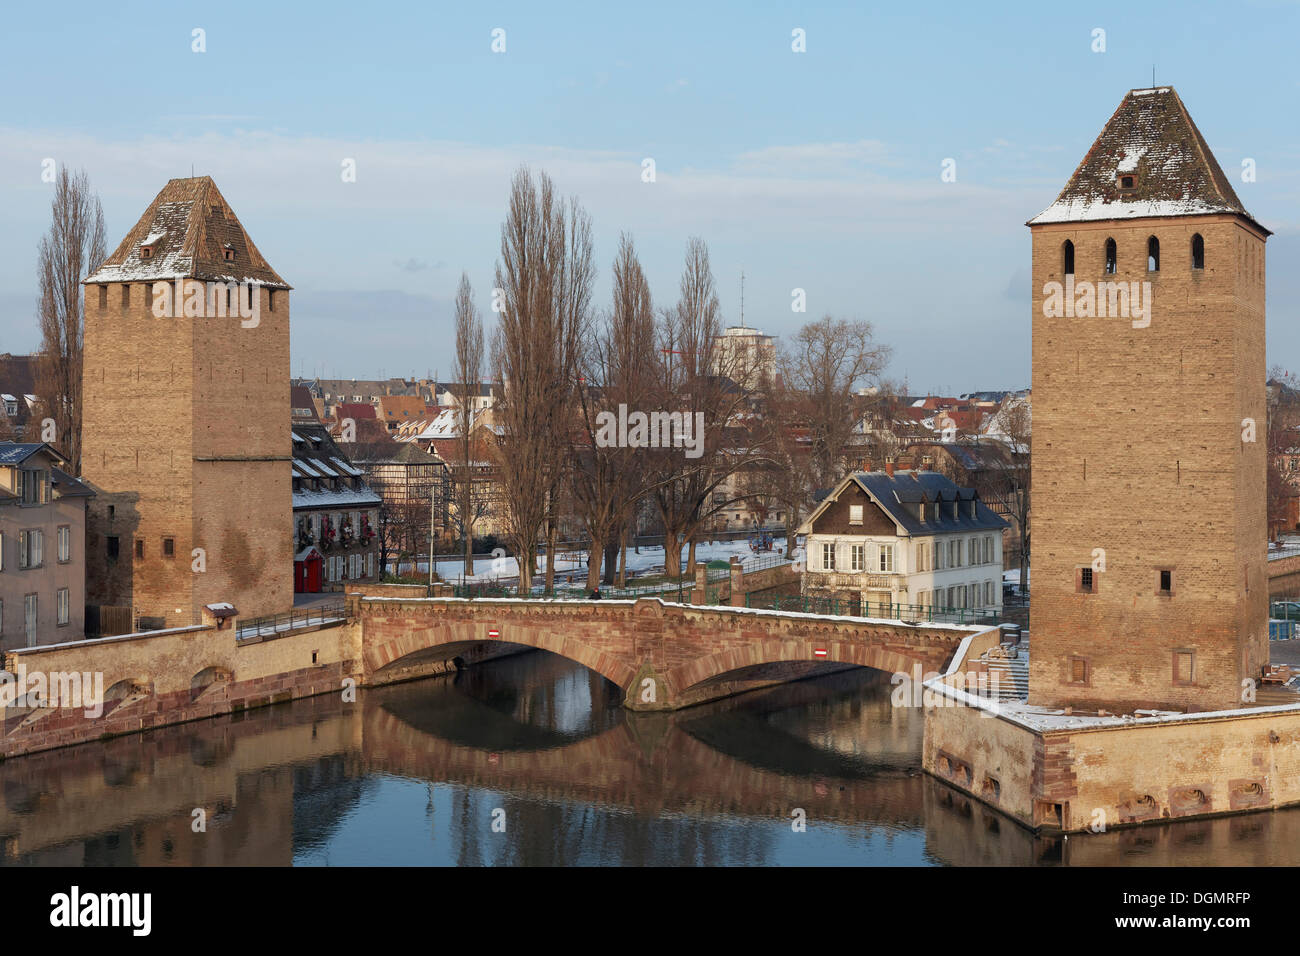 Ponts couverts ou ponts couverts sur l'Ill et des tours de la muraille de la ville, la Petite France, Strasbourg Banque D'Images